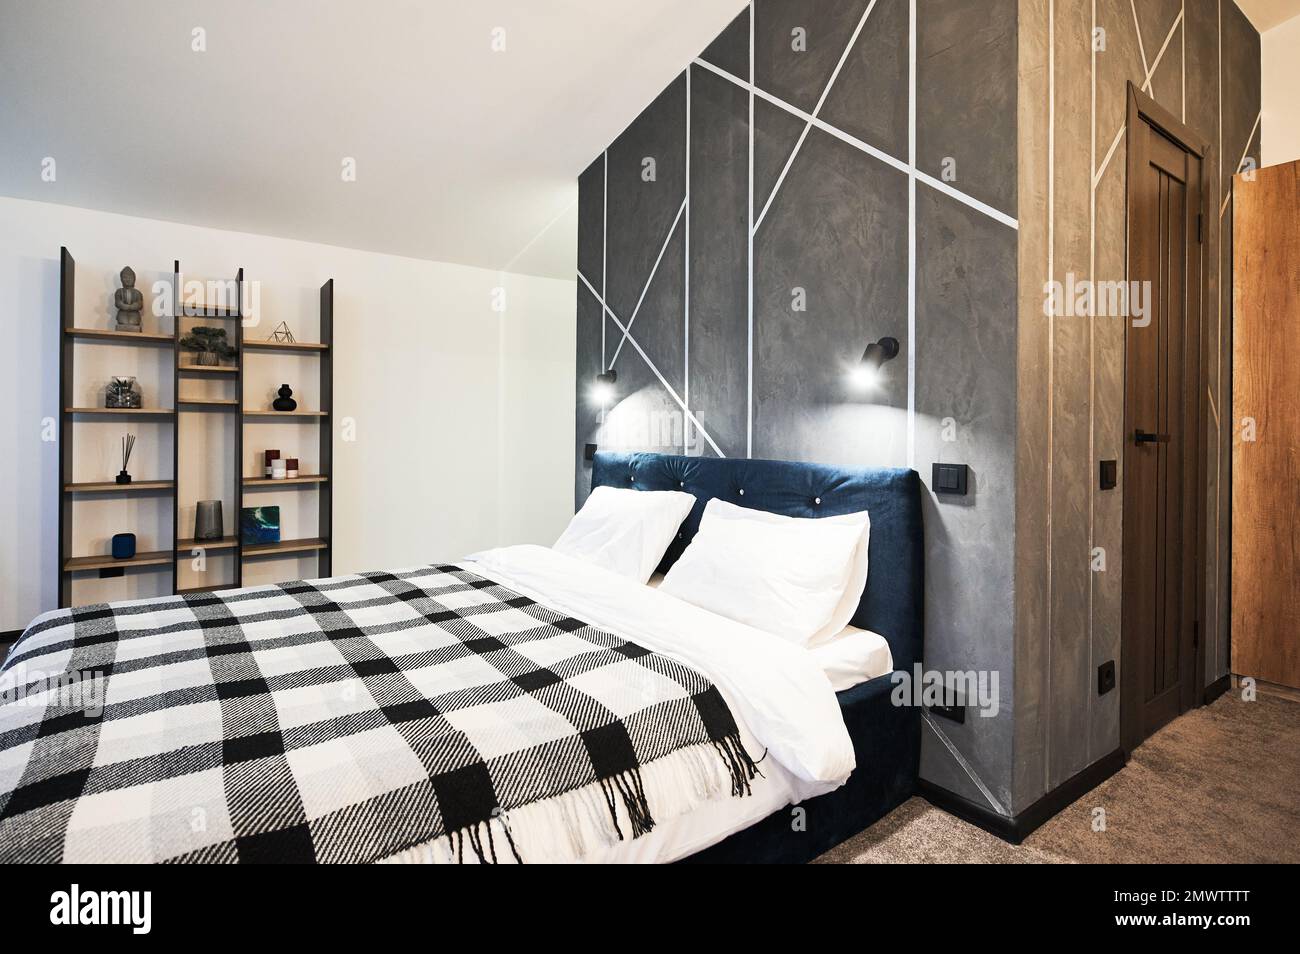 Schlafzimmer mit großem Bett und dekorierten Holzregalen im Innenbereich. Seitenansicht des breiten Bettes, mit kariertem Karomuster an grauen Wänden und geometrischem Muster im Schlafzimmer. Innenkonzept. Stockfoto